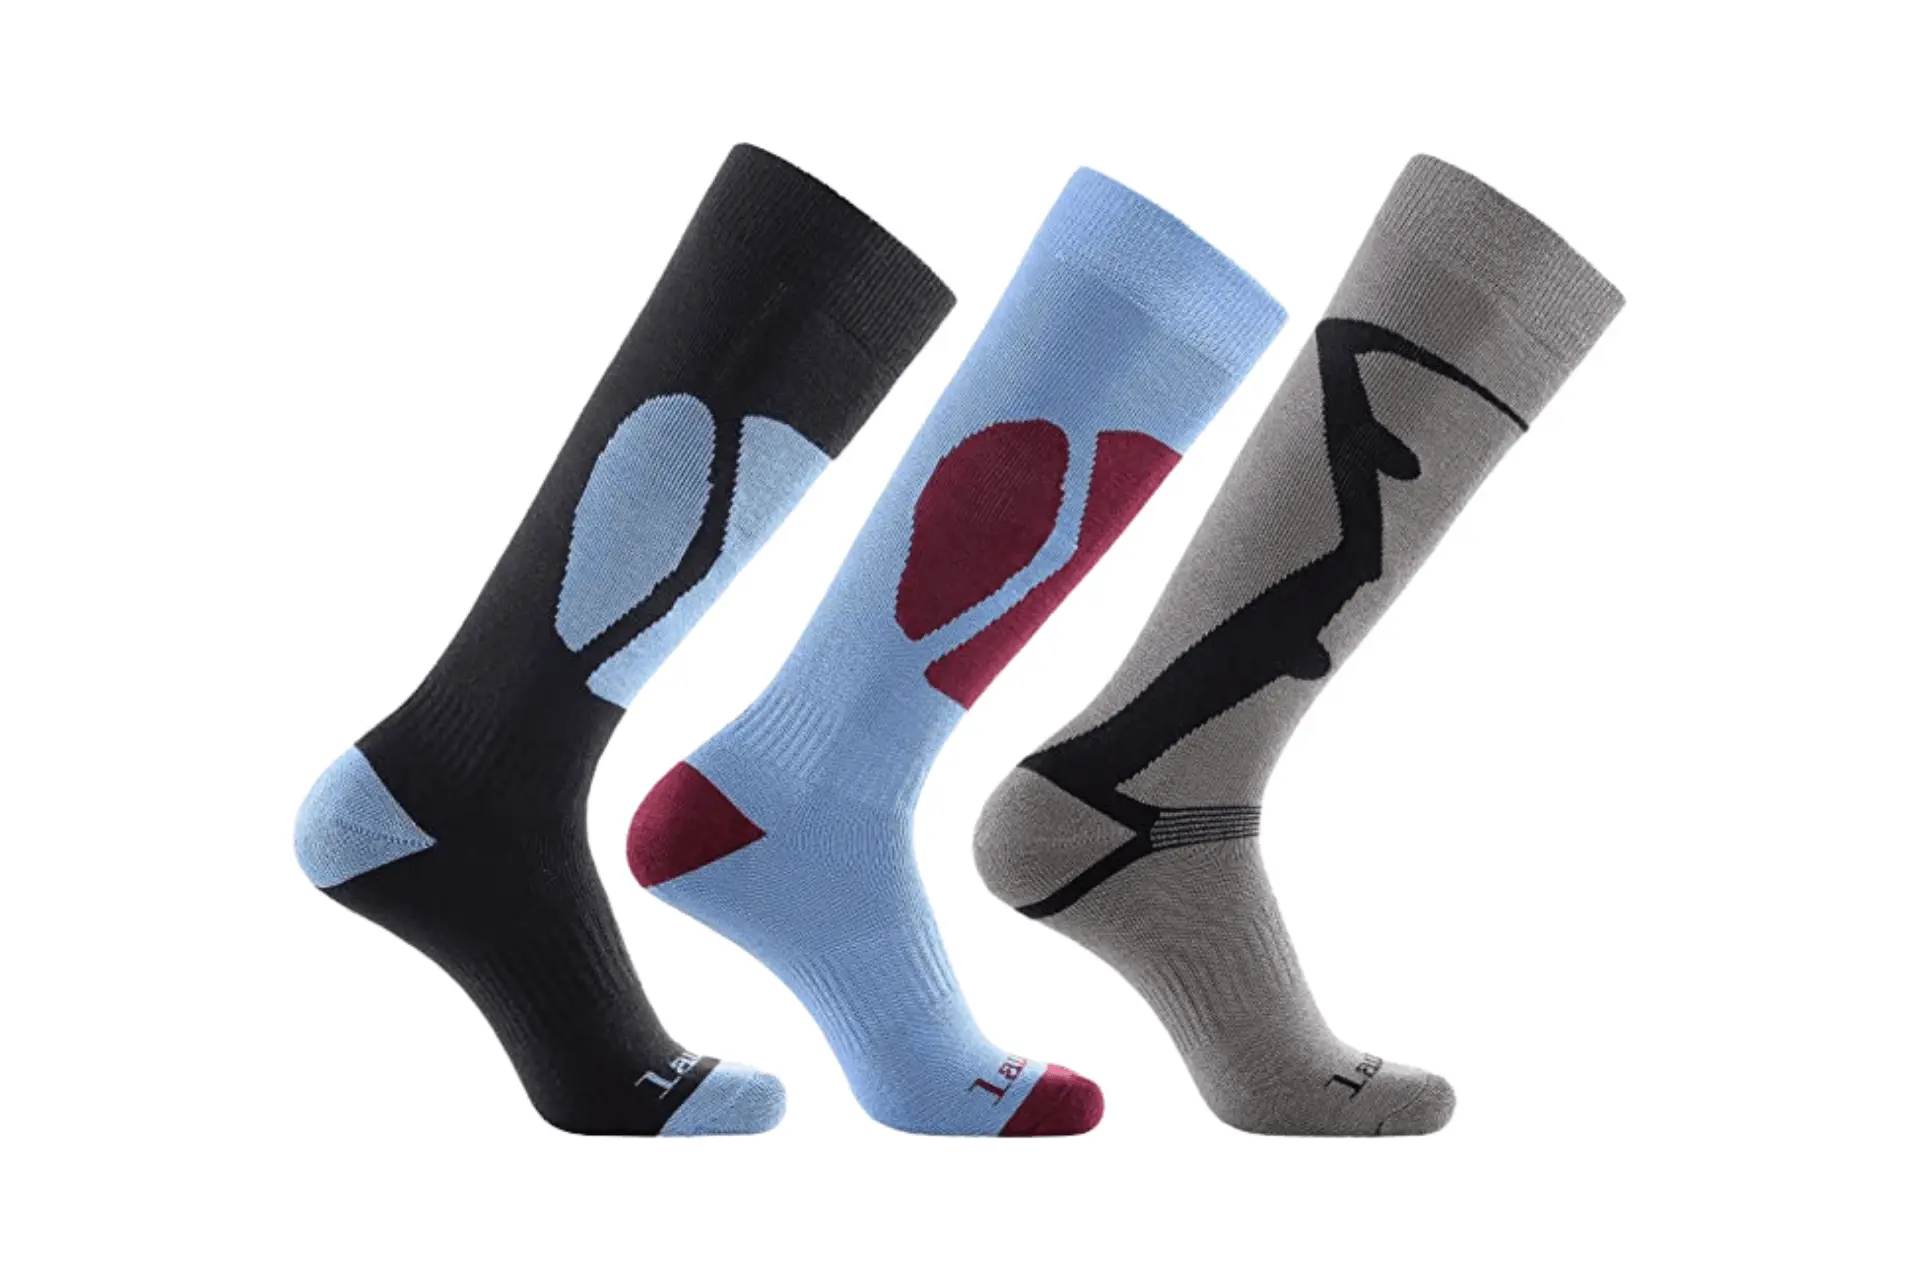 Laulax Men’s 3 Pairs Cashmere Socks